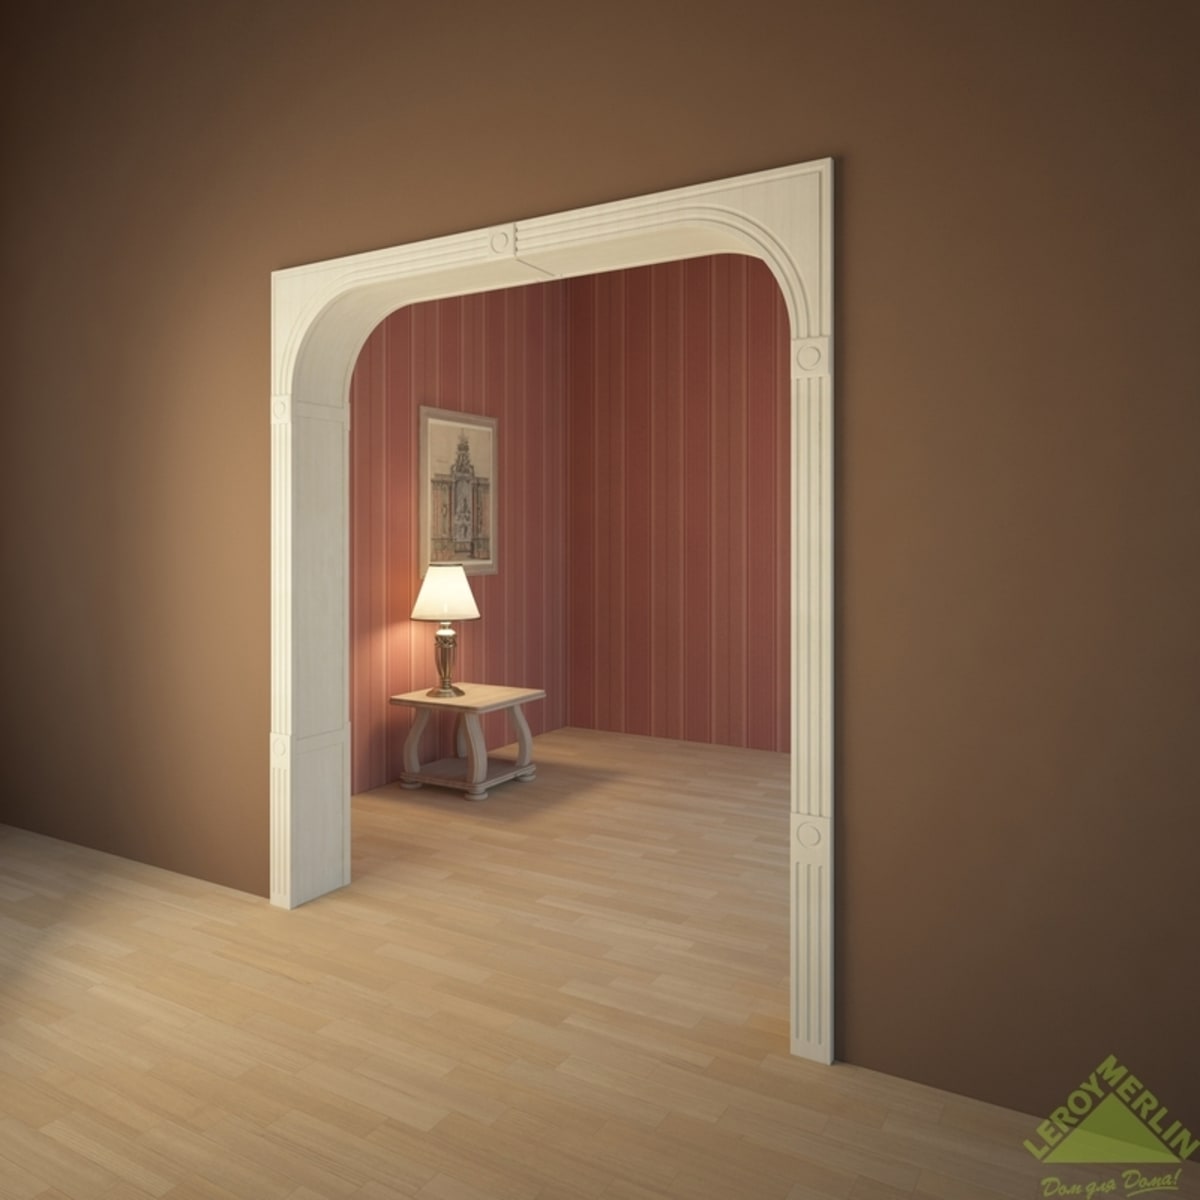 Арка в квартире прямоугольная: красивые квадратные варианты для дверного проема со светлой отделкой в интерьере квартиры